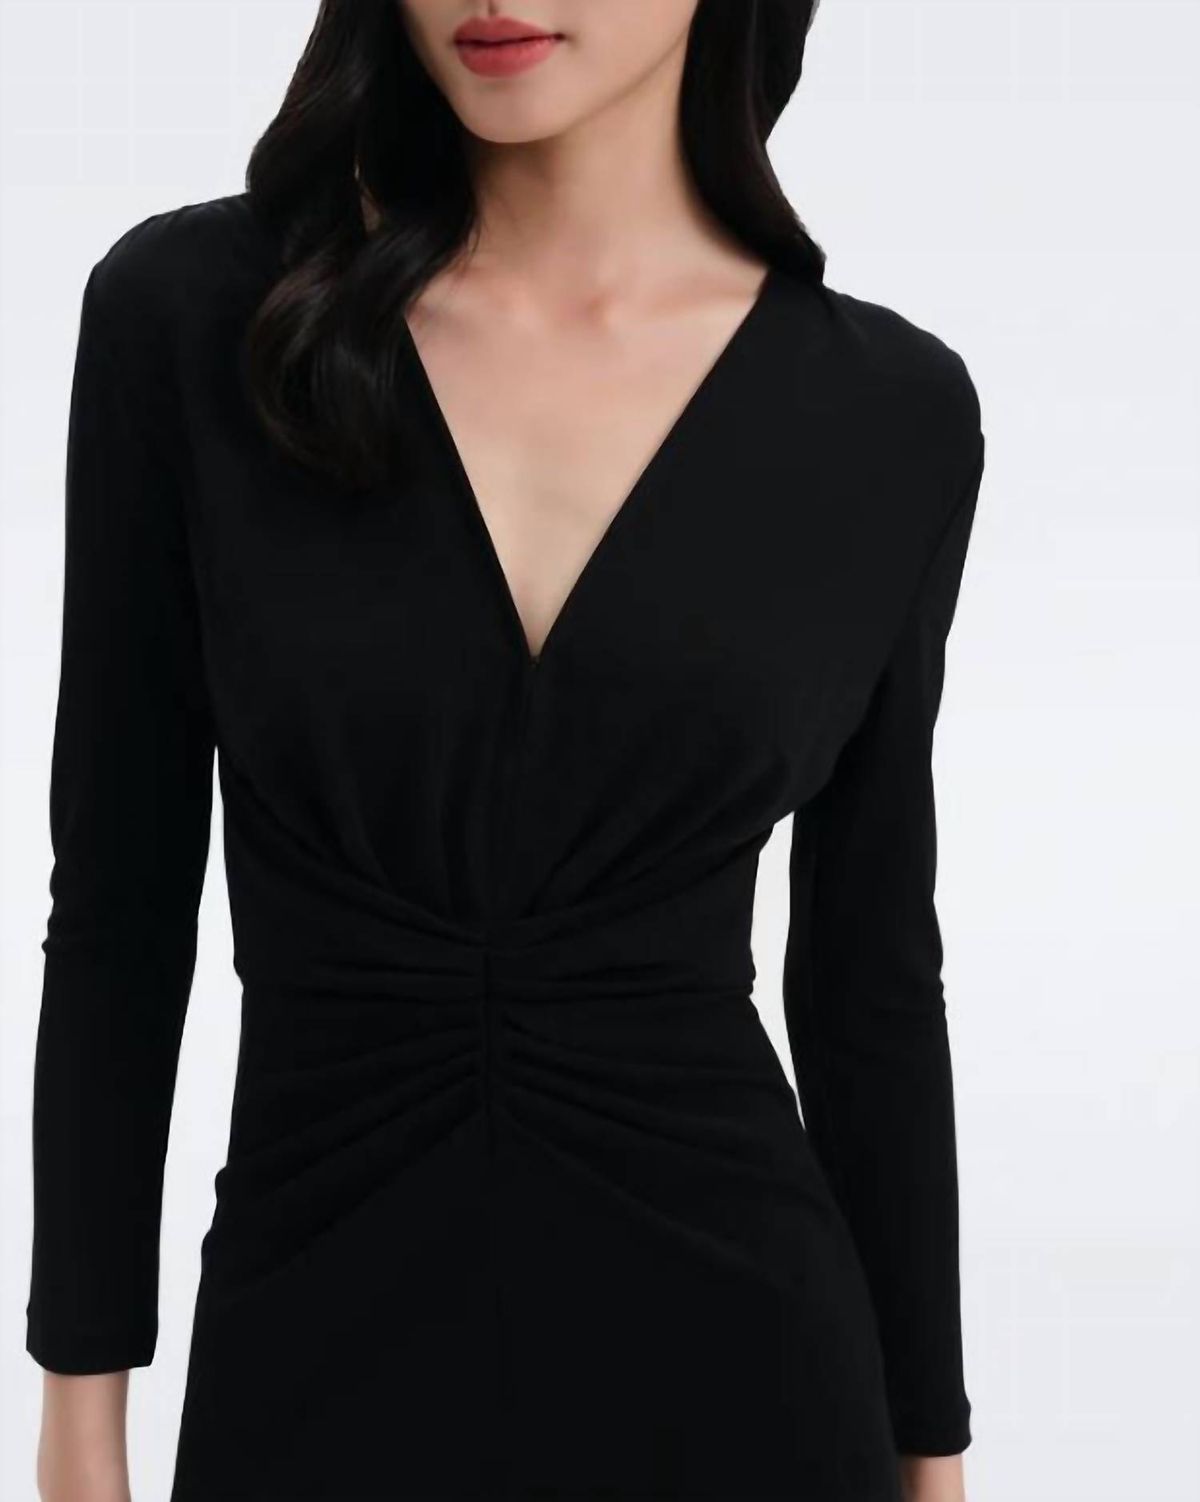 Style 1-2660324014-2696 Diane von Furstenberg Size L Black Cocktail Dress on Queenly